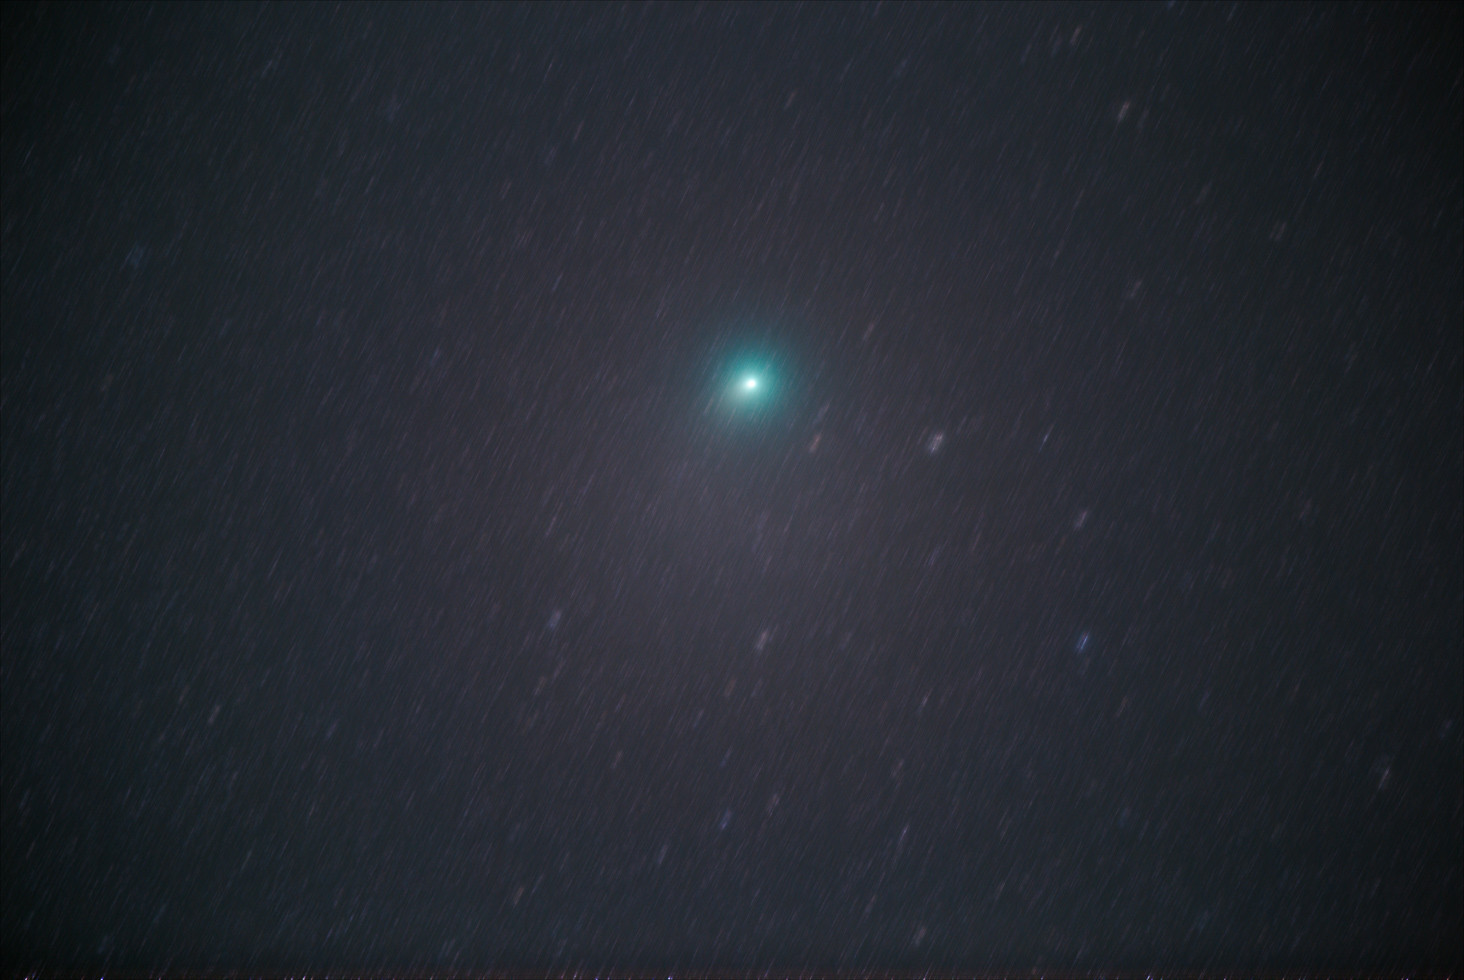 ウィルタネン彗星46p Wirtanen 天体写真撮影日記